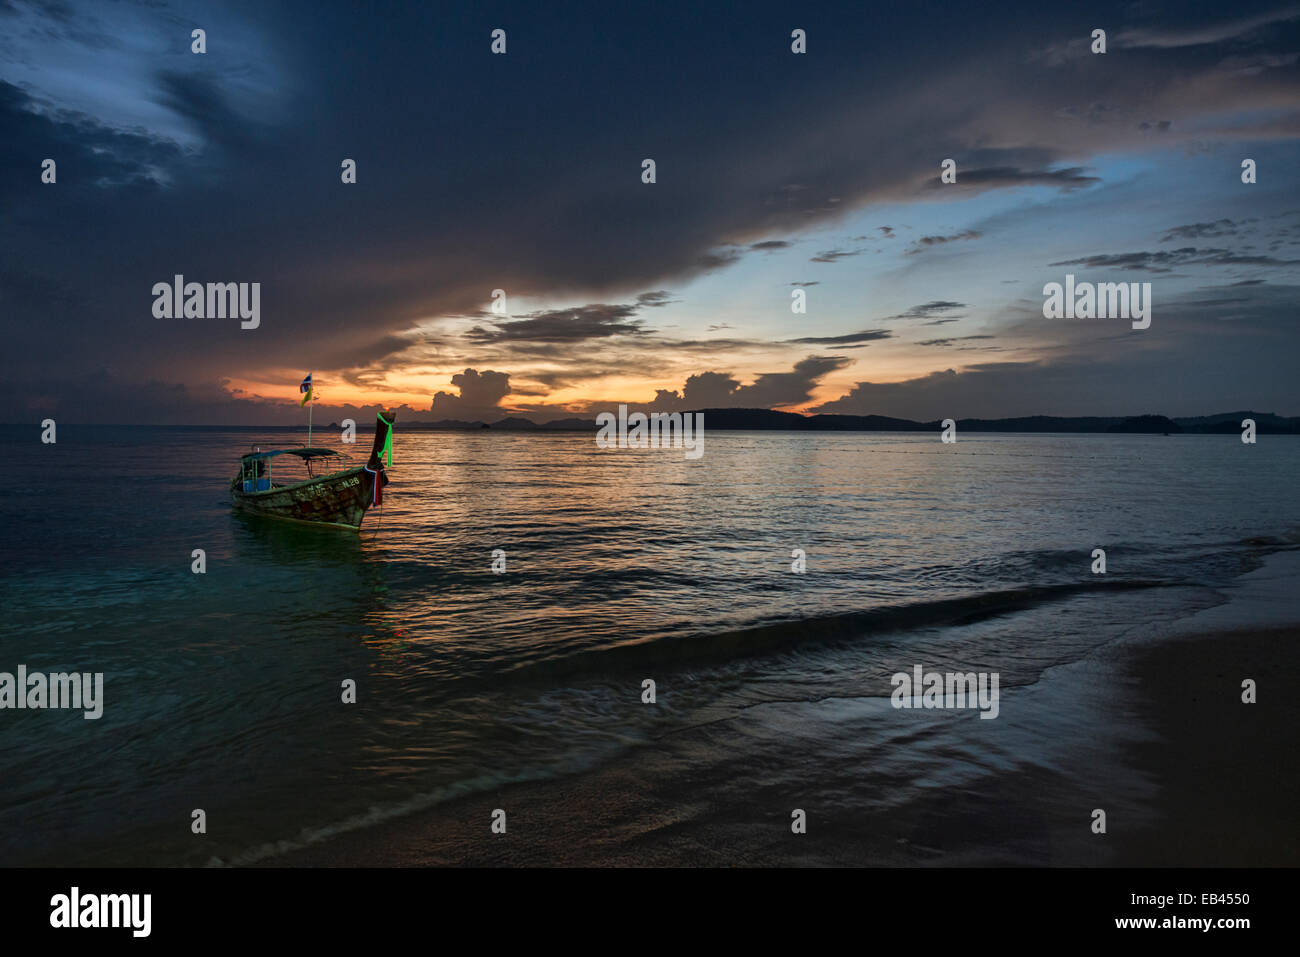 longtail boat at sunset, Ao Nang, Thailand Stock Photo